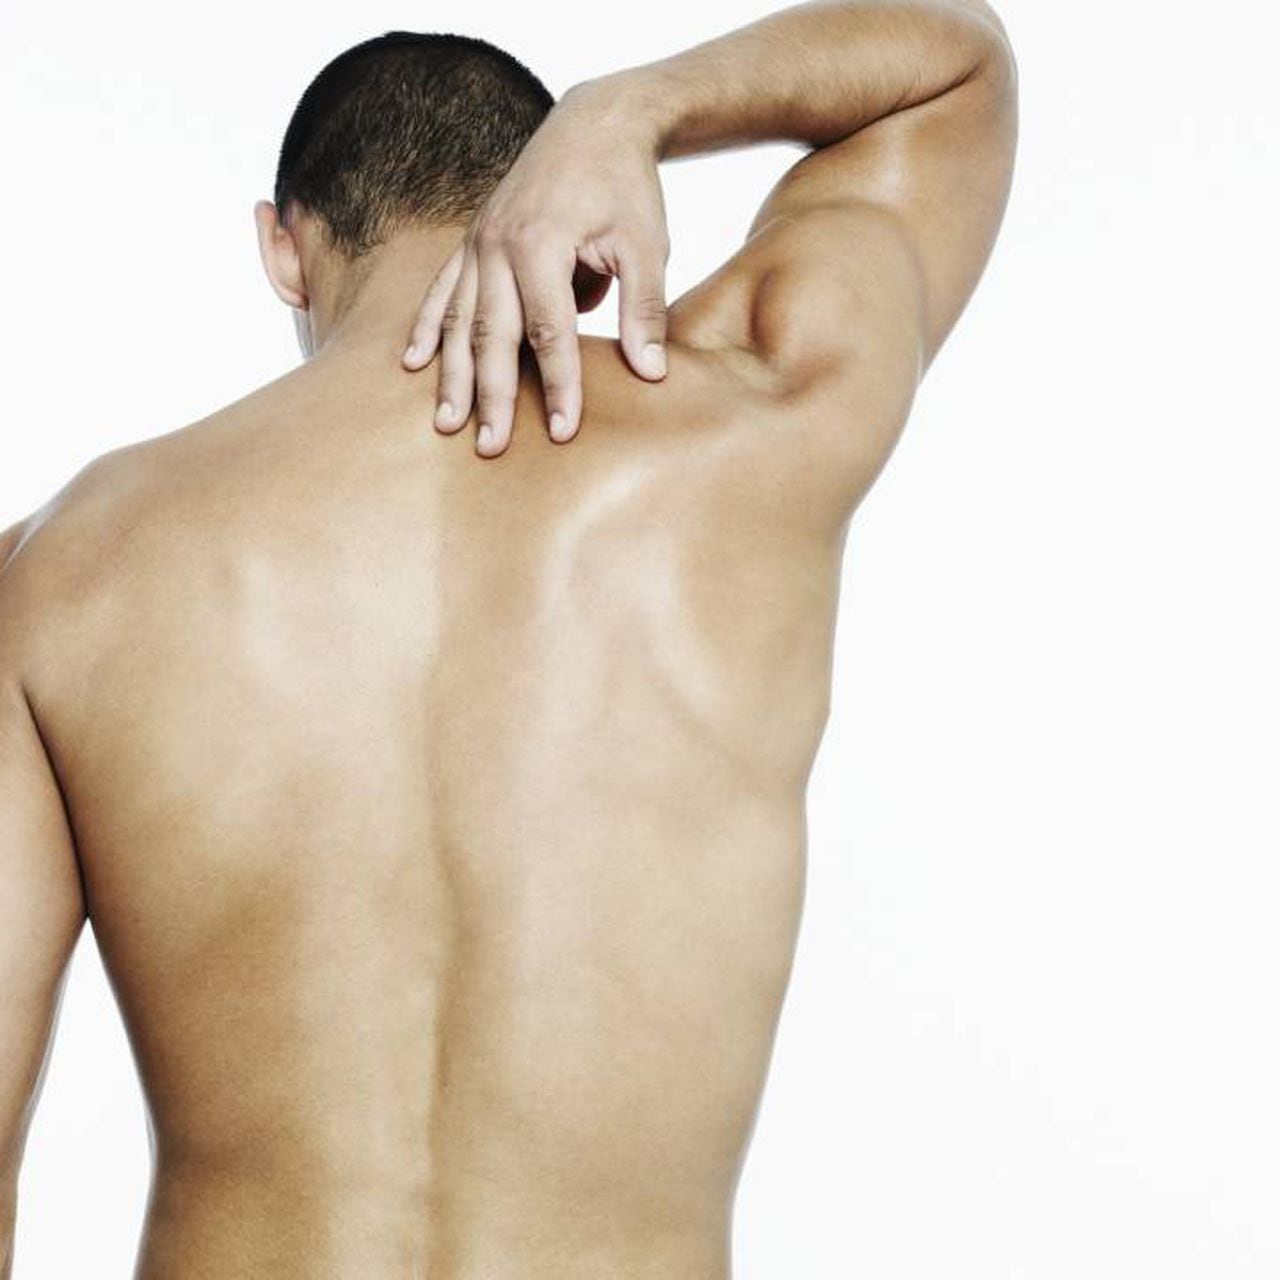 Dolor en la espalda alta: ejercicios para aliviarlo